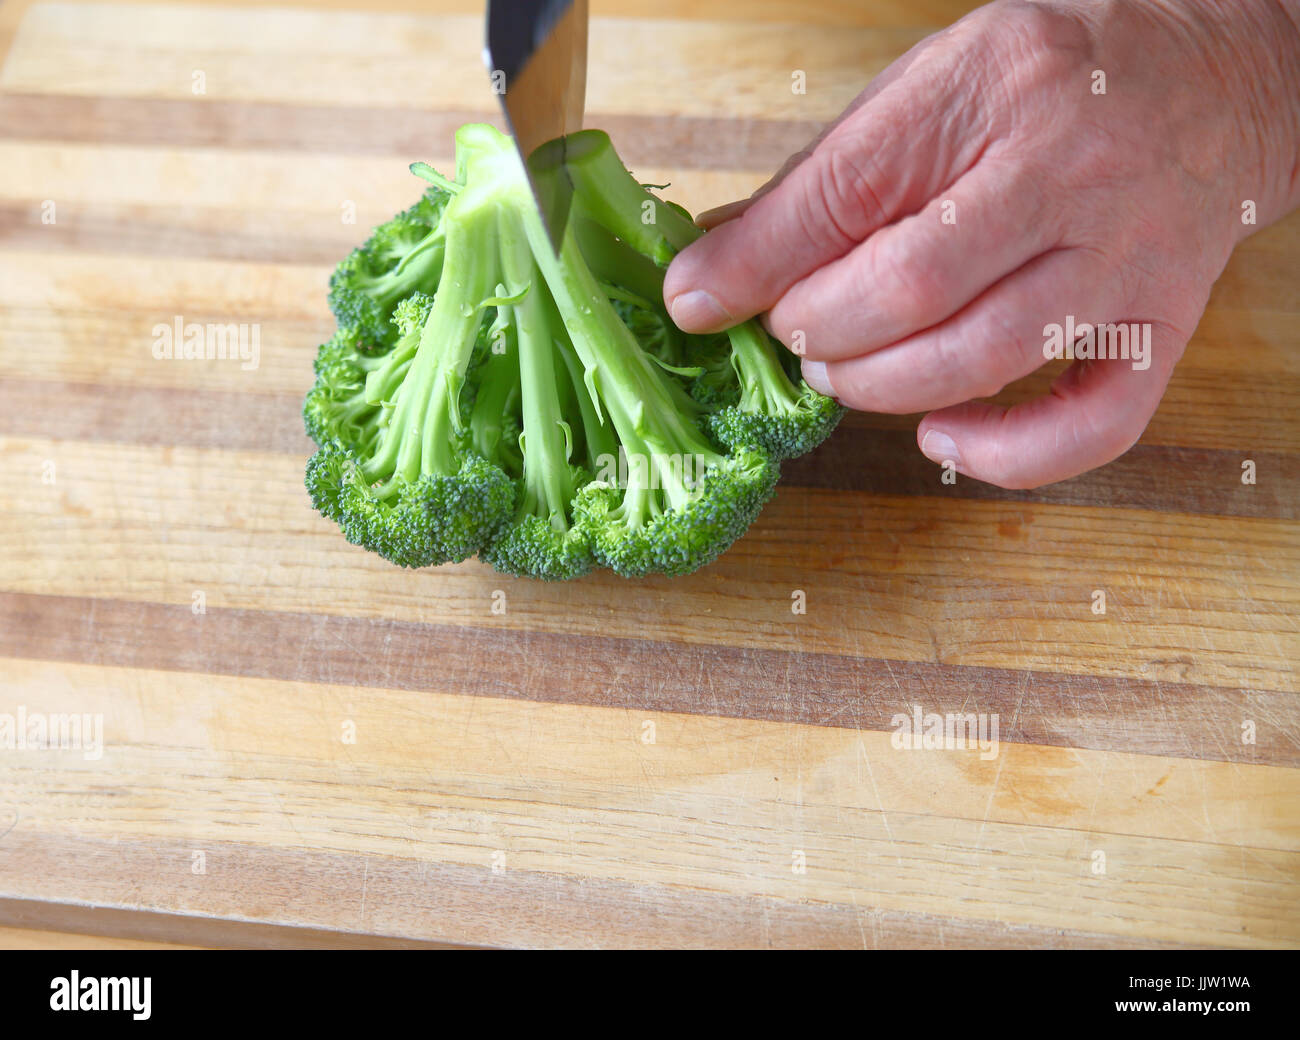 Un homme coupe le brocoli frais sur une planche à découper, place pour le texte Banque D'Images